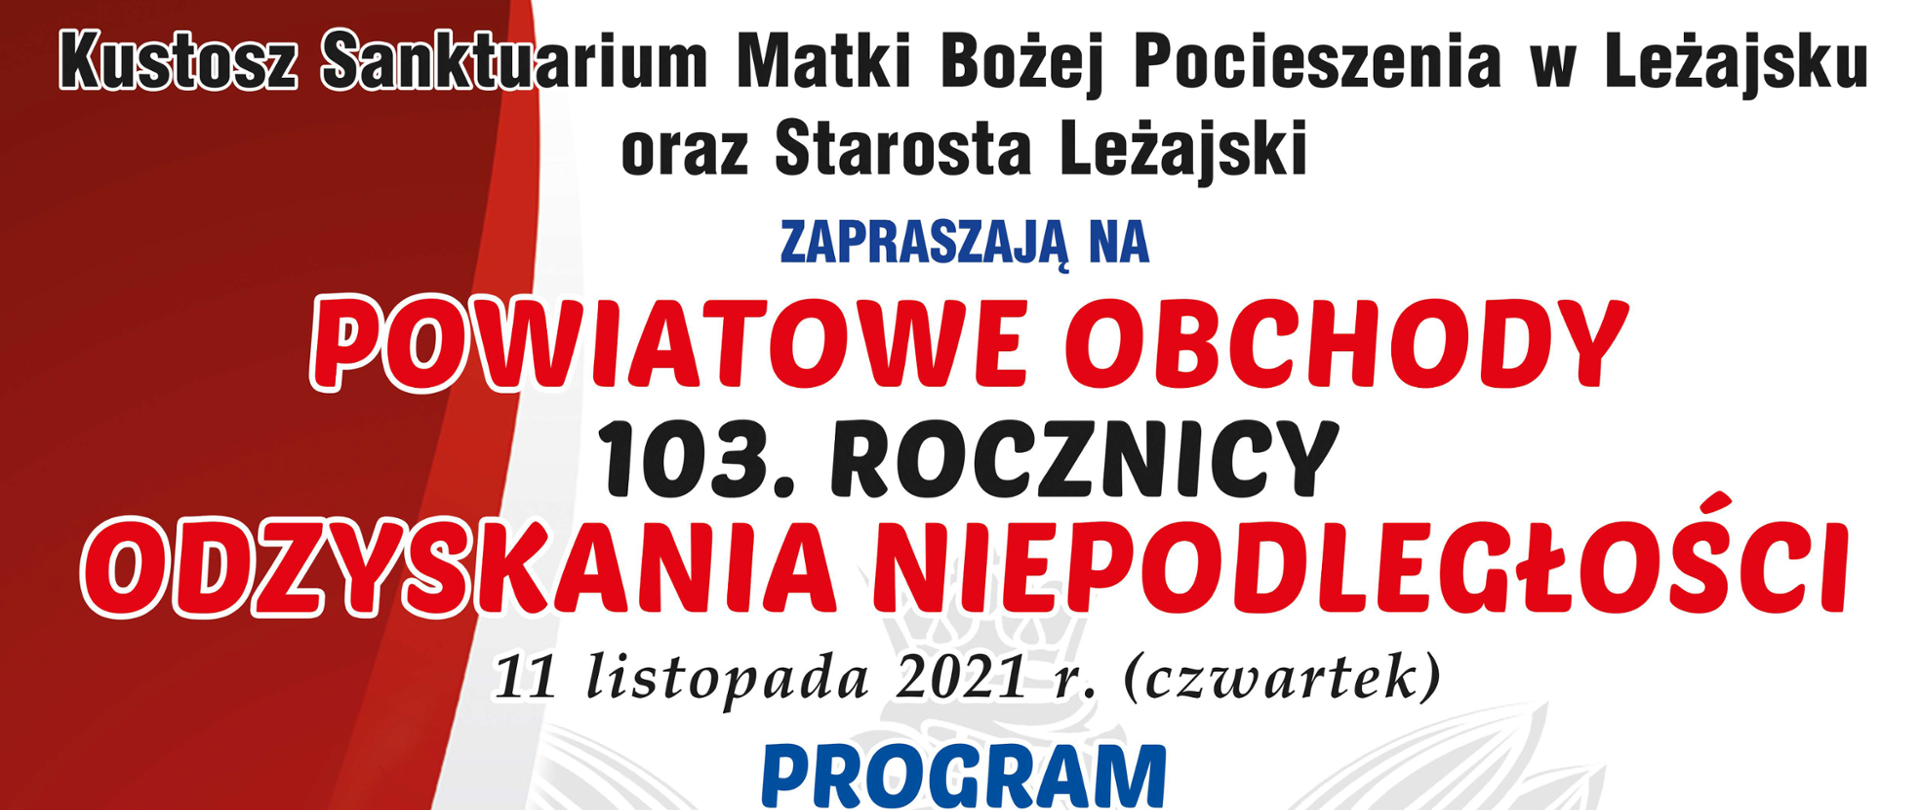 Plakat w białoczerwonych barwach z programem uroczystości obchodów odzyskania przez Polskę niepodległości.